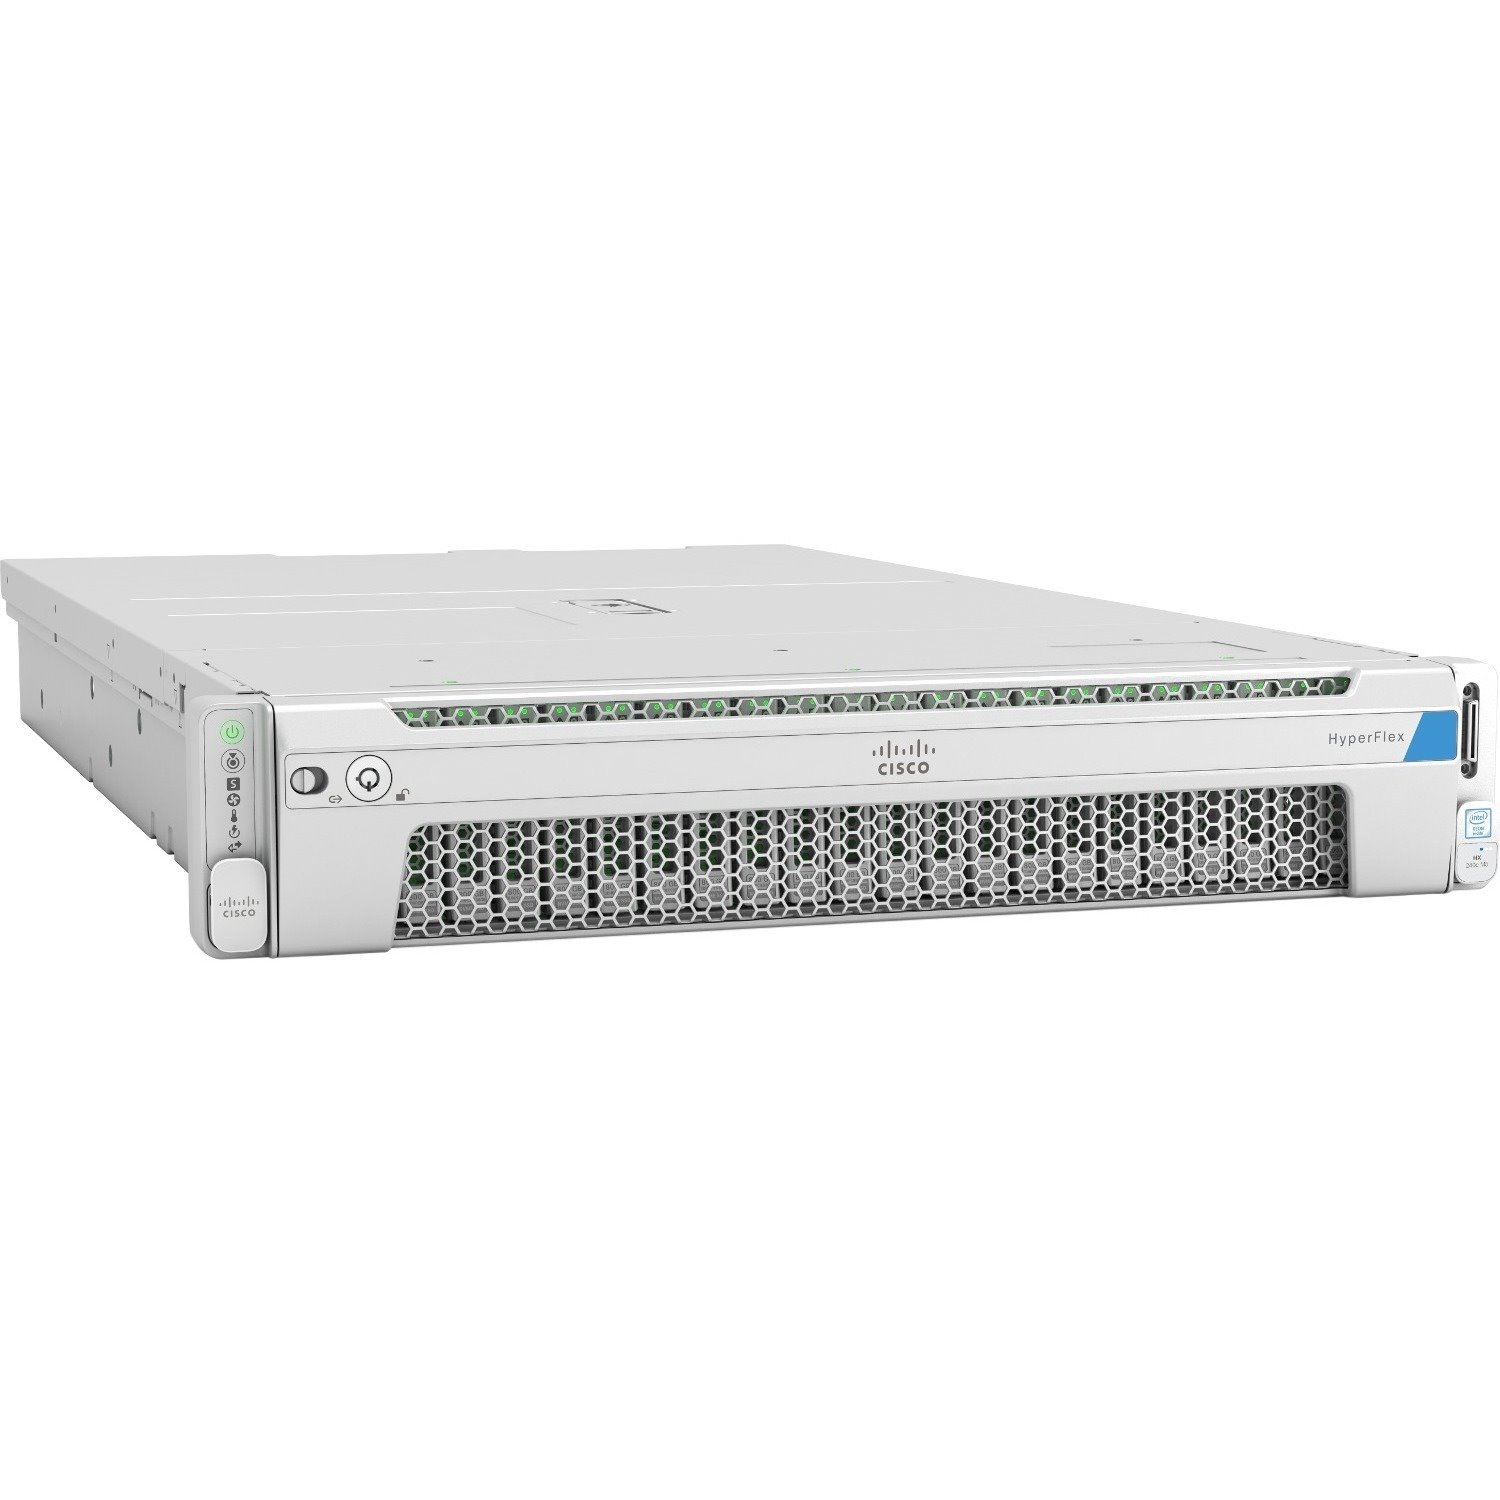 Cisco HyperFlex HX240c M5 2U Rack Server - 2 x Intel Xeon Silver 4214R 2.40 GHz - 384 GB RAM - 48 TB HDD - (6 x 8TB) HDD Configuration - 3.68 TB SSD - (1 x 3.2TB, 2 x 240GB) SSD Configuration - 12Gb/s SAS Controller